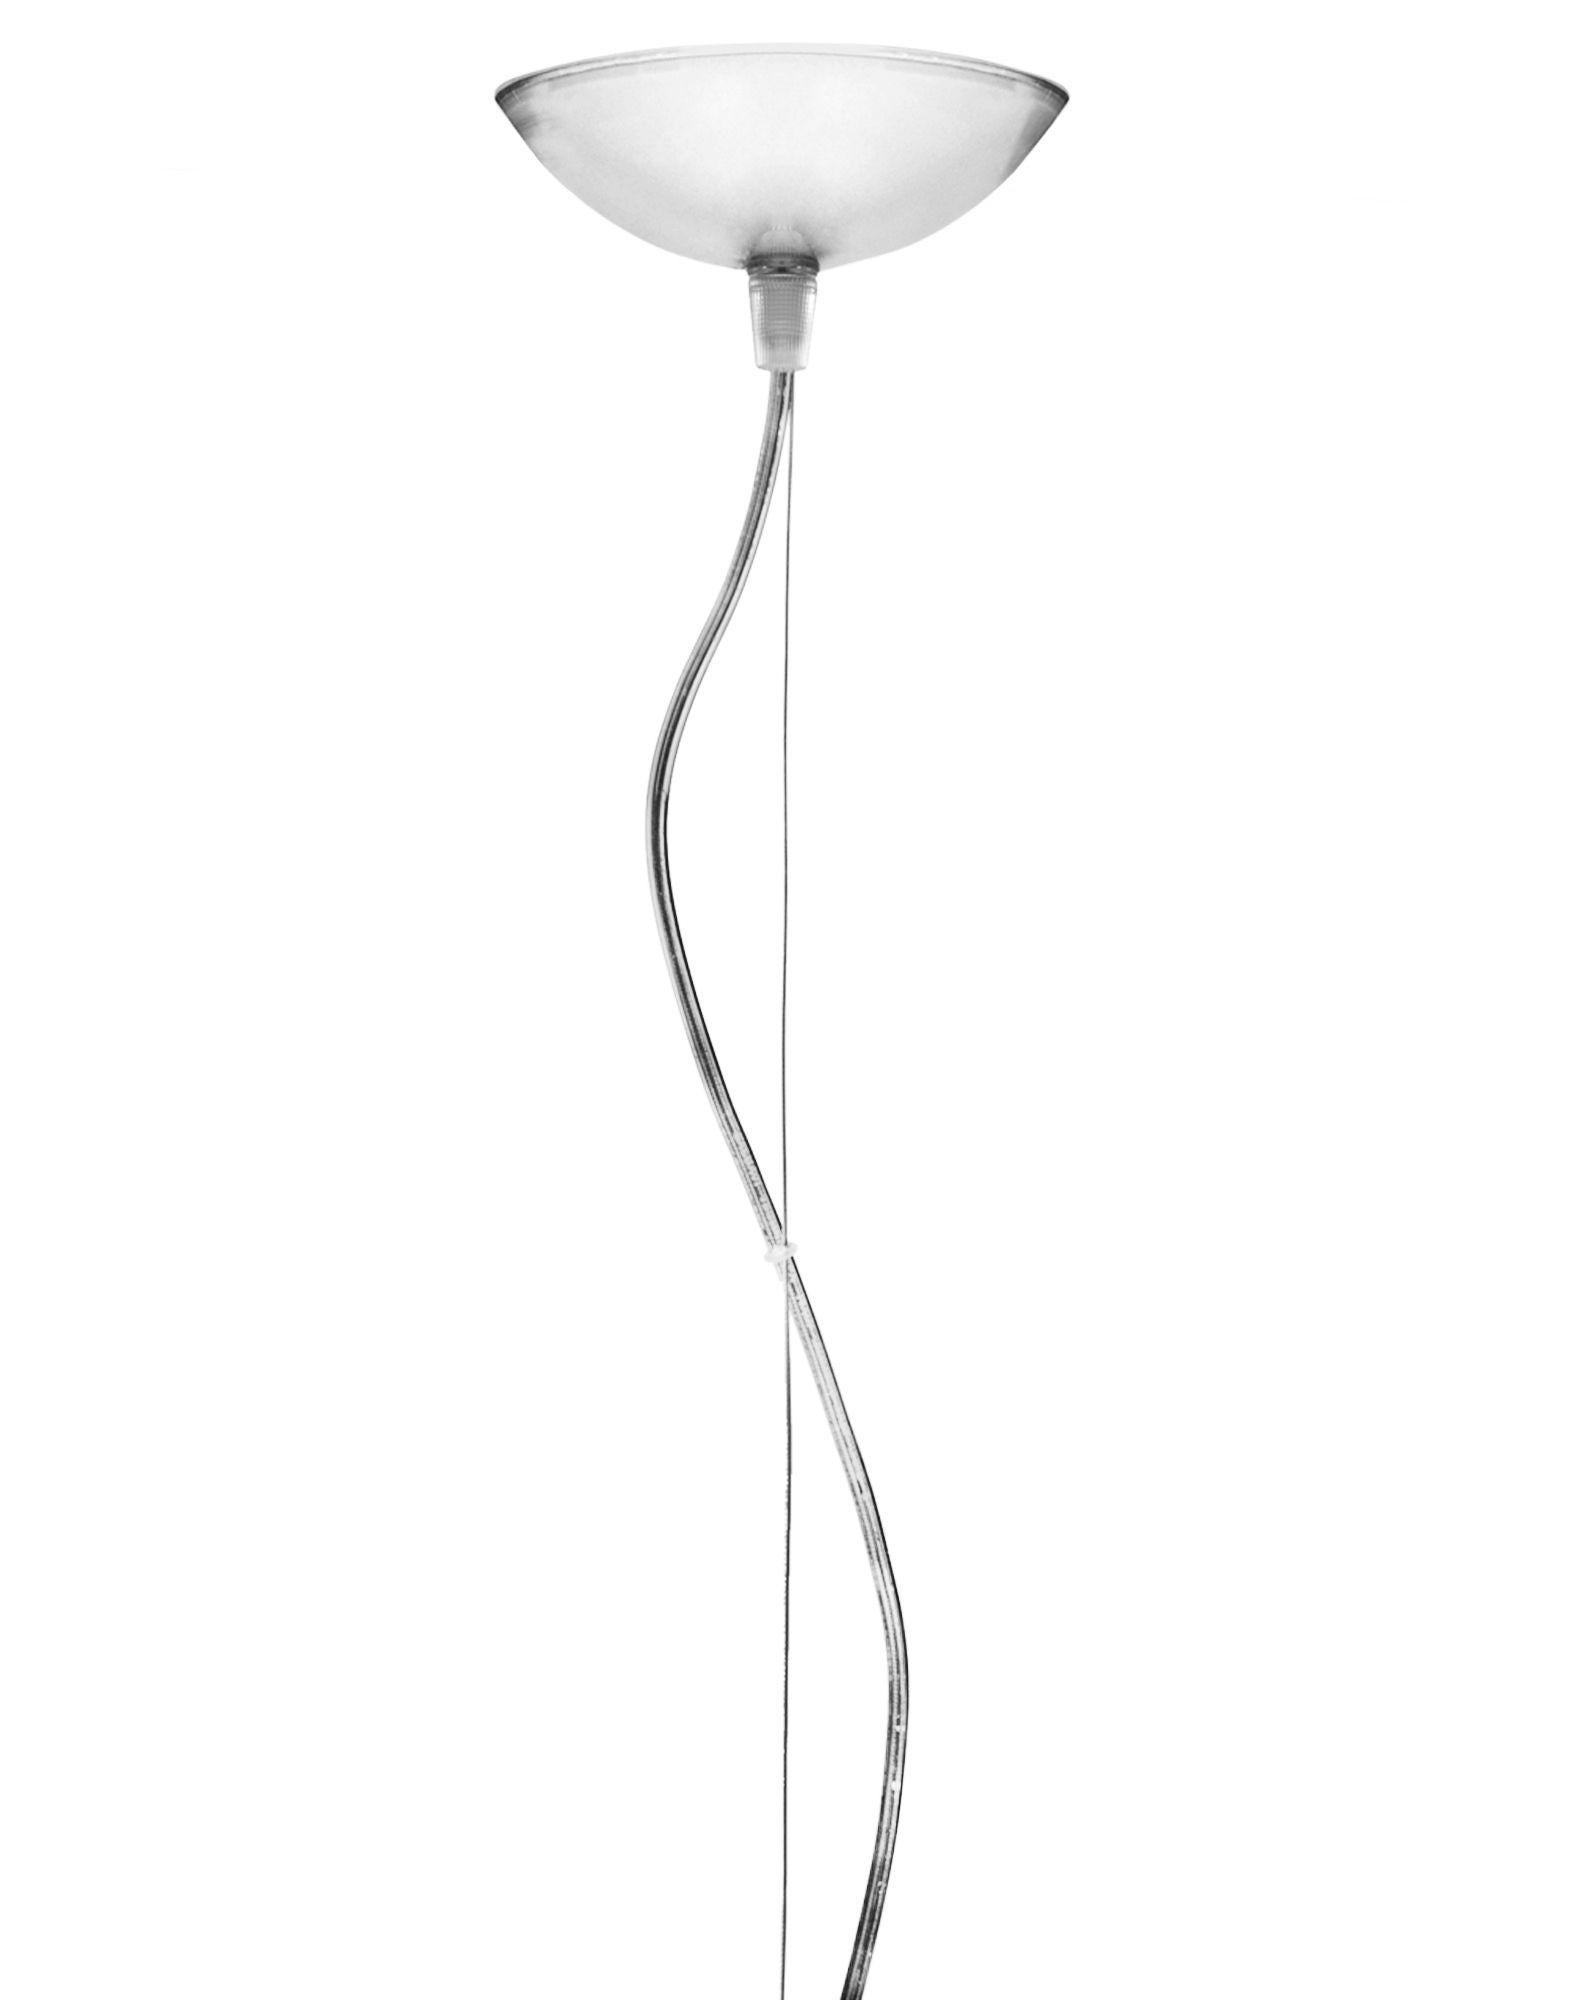 FL/Y lampe pendante grande en cristal. Il s'agit d'une collection de lampes à suspension conçue par Ferruccio Laviani en 2002.

Dimensions : Hauteur de l'abat-jour : 21,67 po ; diamètre : 32,67 po ; poids unitaire : 6,5 kg. Fabriqué en : PMMA.